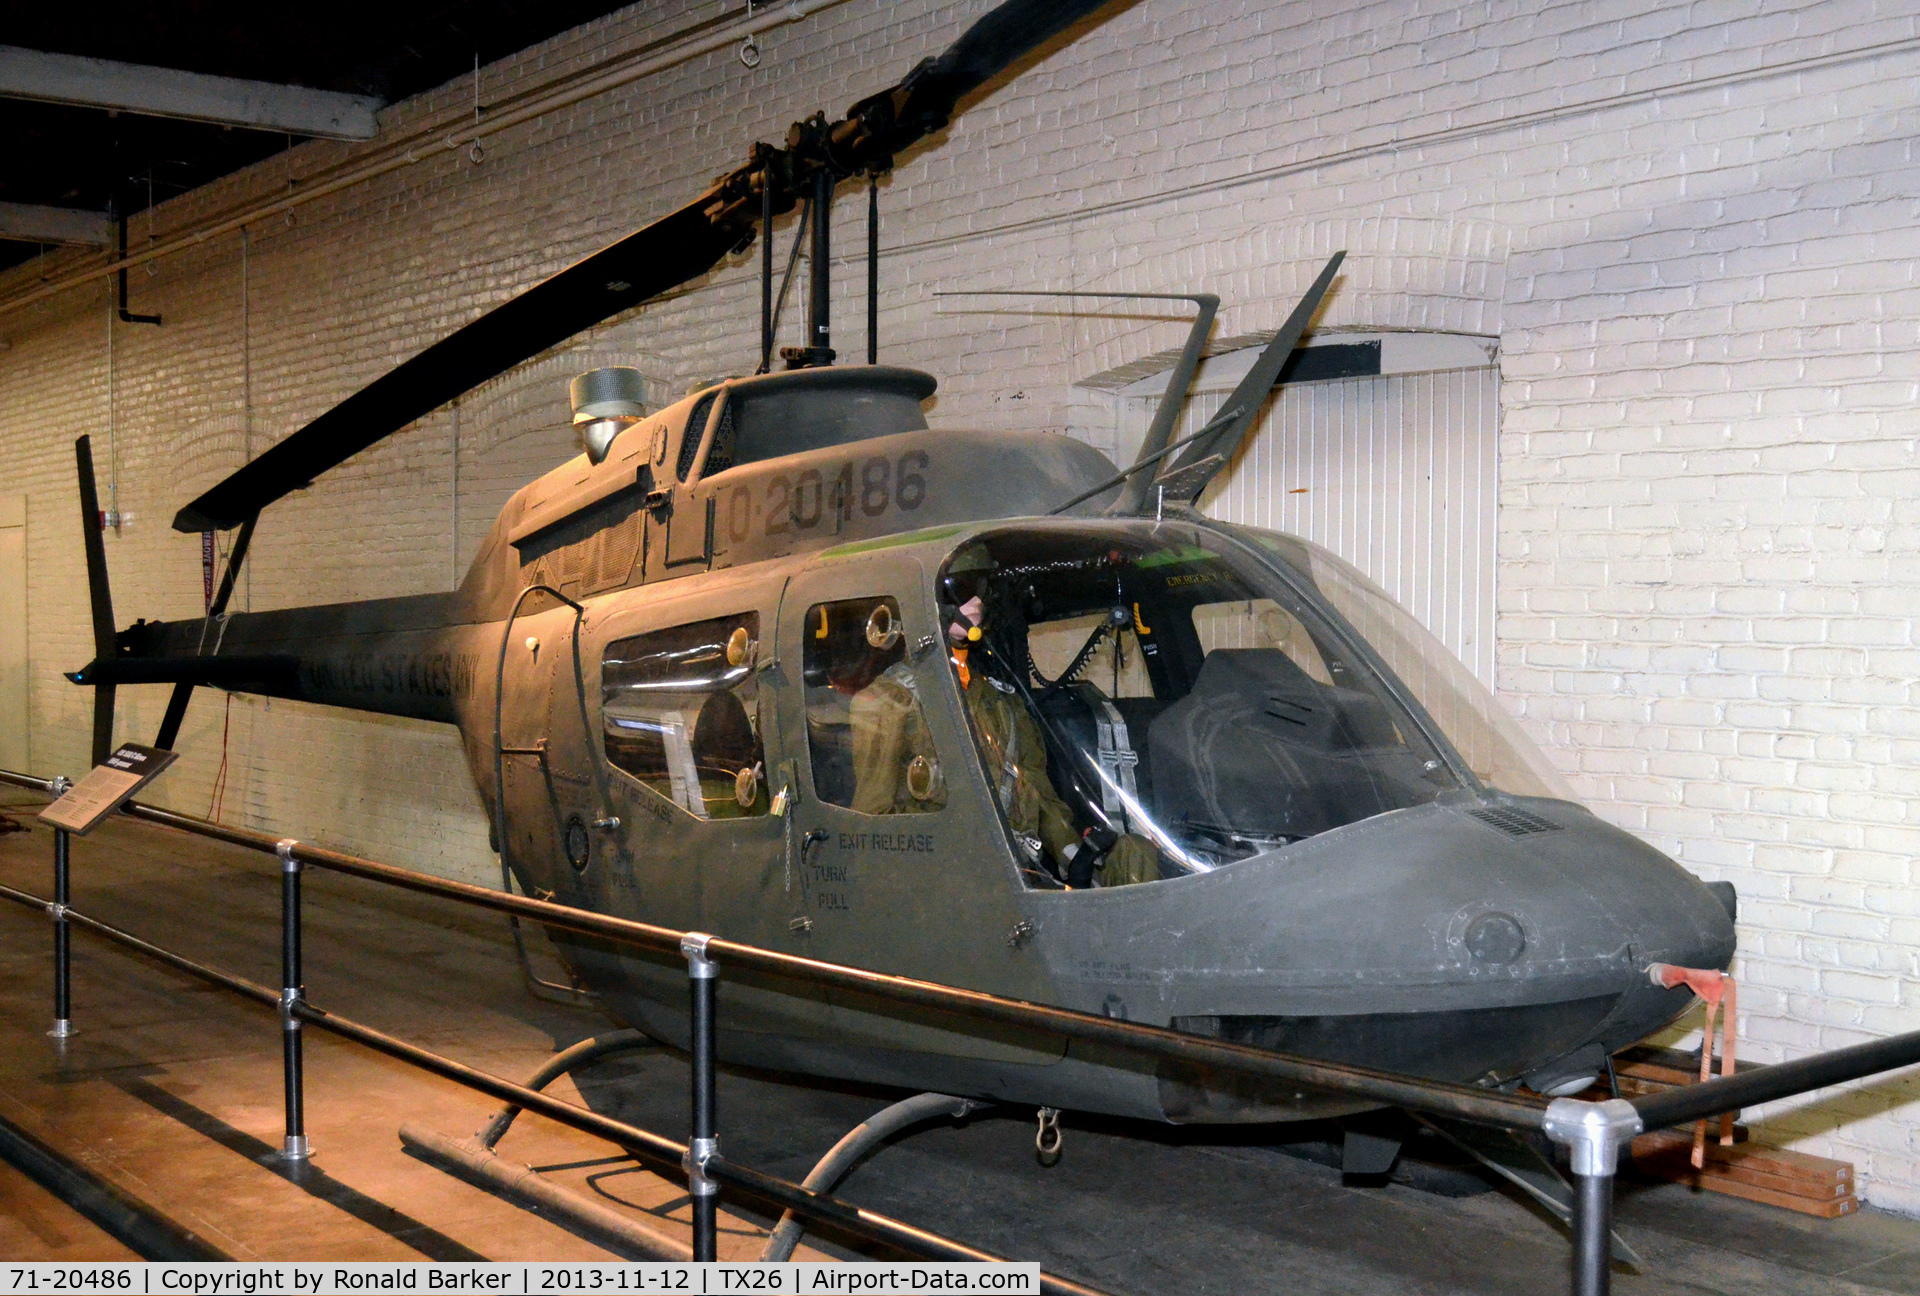 71-20486, 1971 Bell OH-58A Kiowa C/N 41347, OH-58A shown as 20486, Texas Military Museum, Camp Mabry, TX